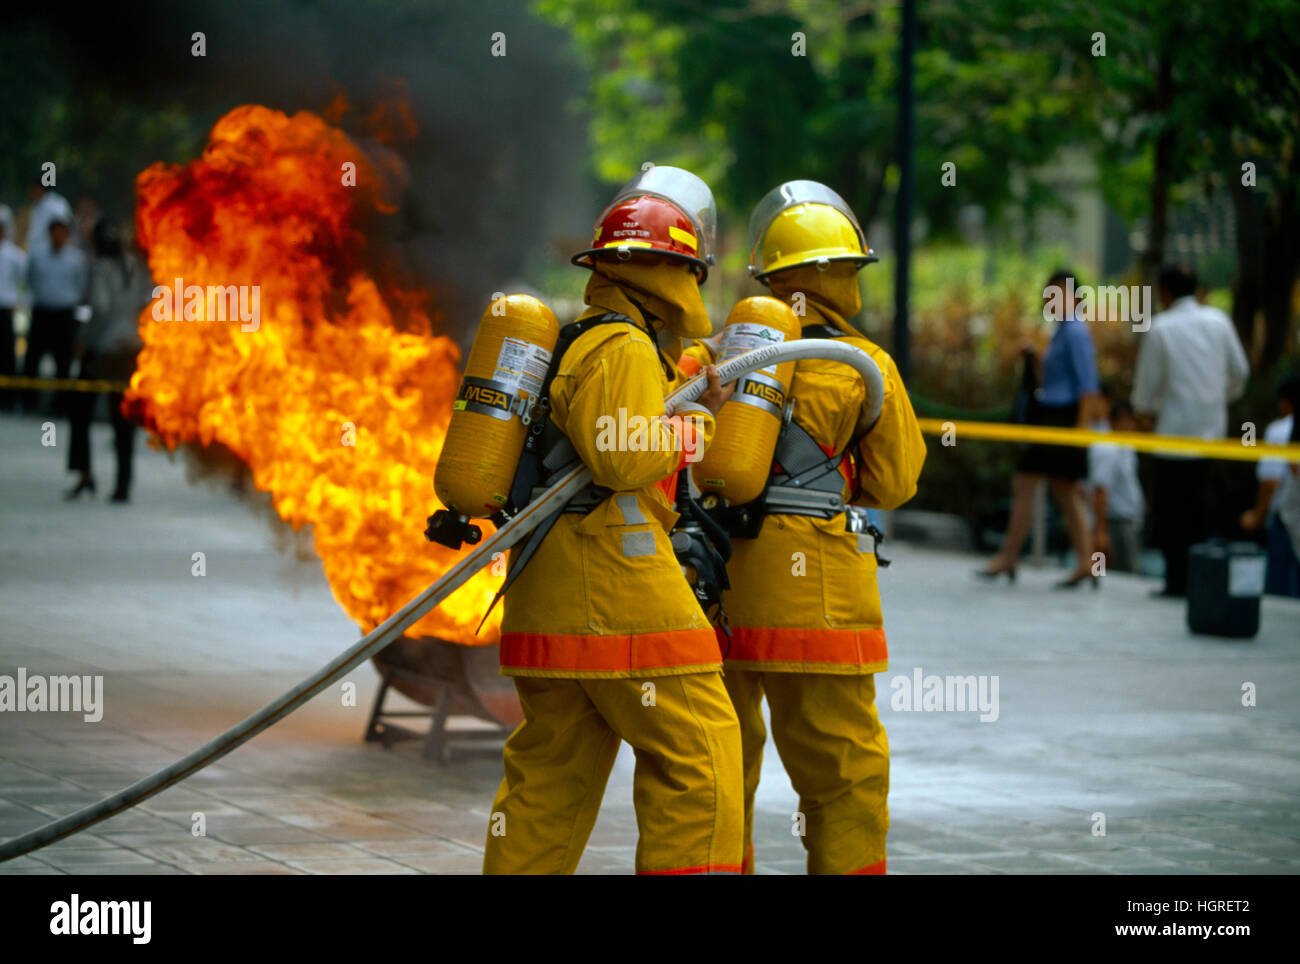 Pompiers avec tuyau d'attaque Blaze, Manille, Philippines Banque D'Images